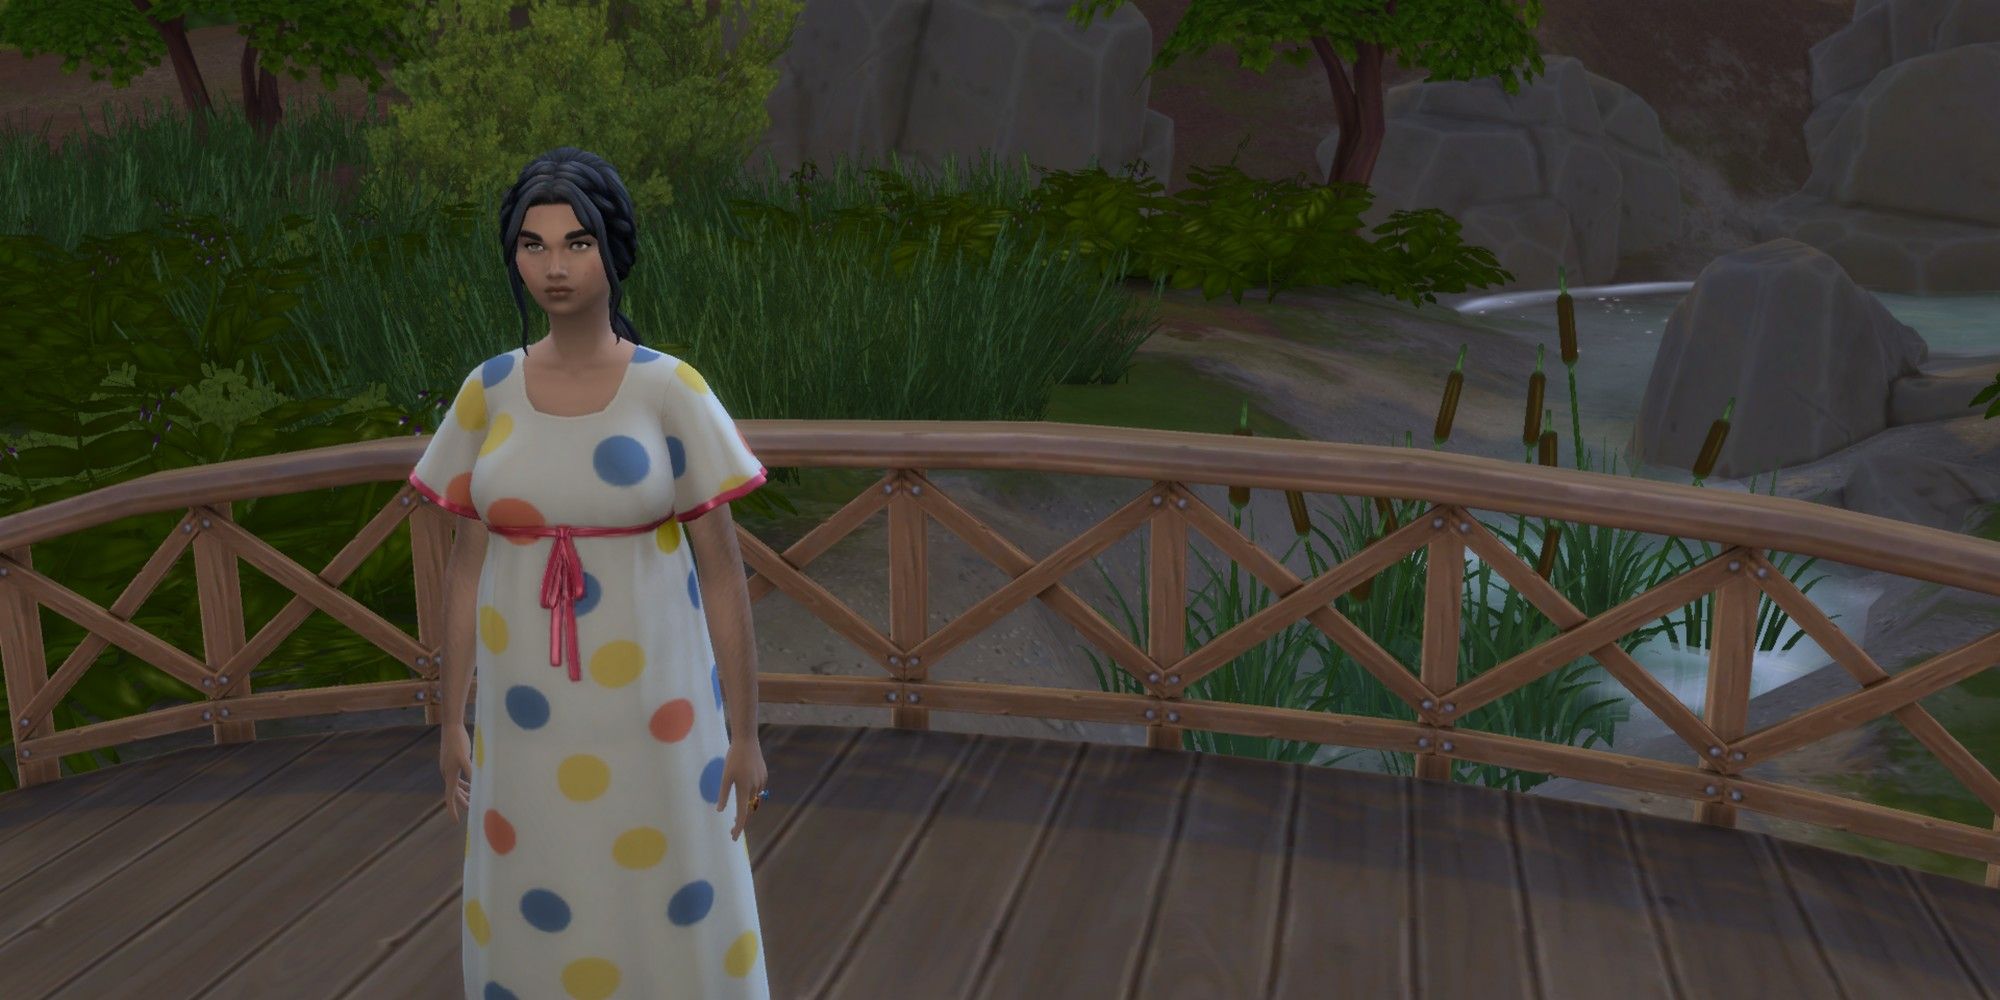 The Sims 4 Depop Create A Sim High School Stories Selenasshop Polkadot Dress